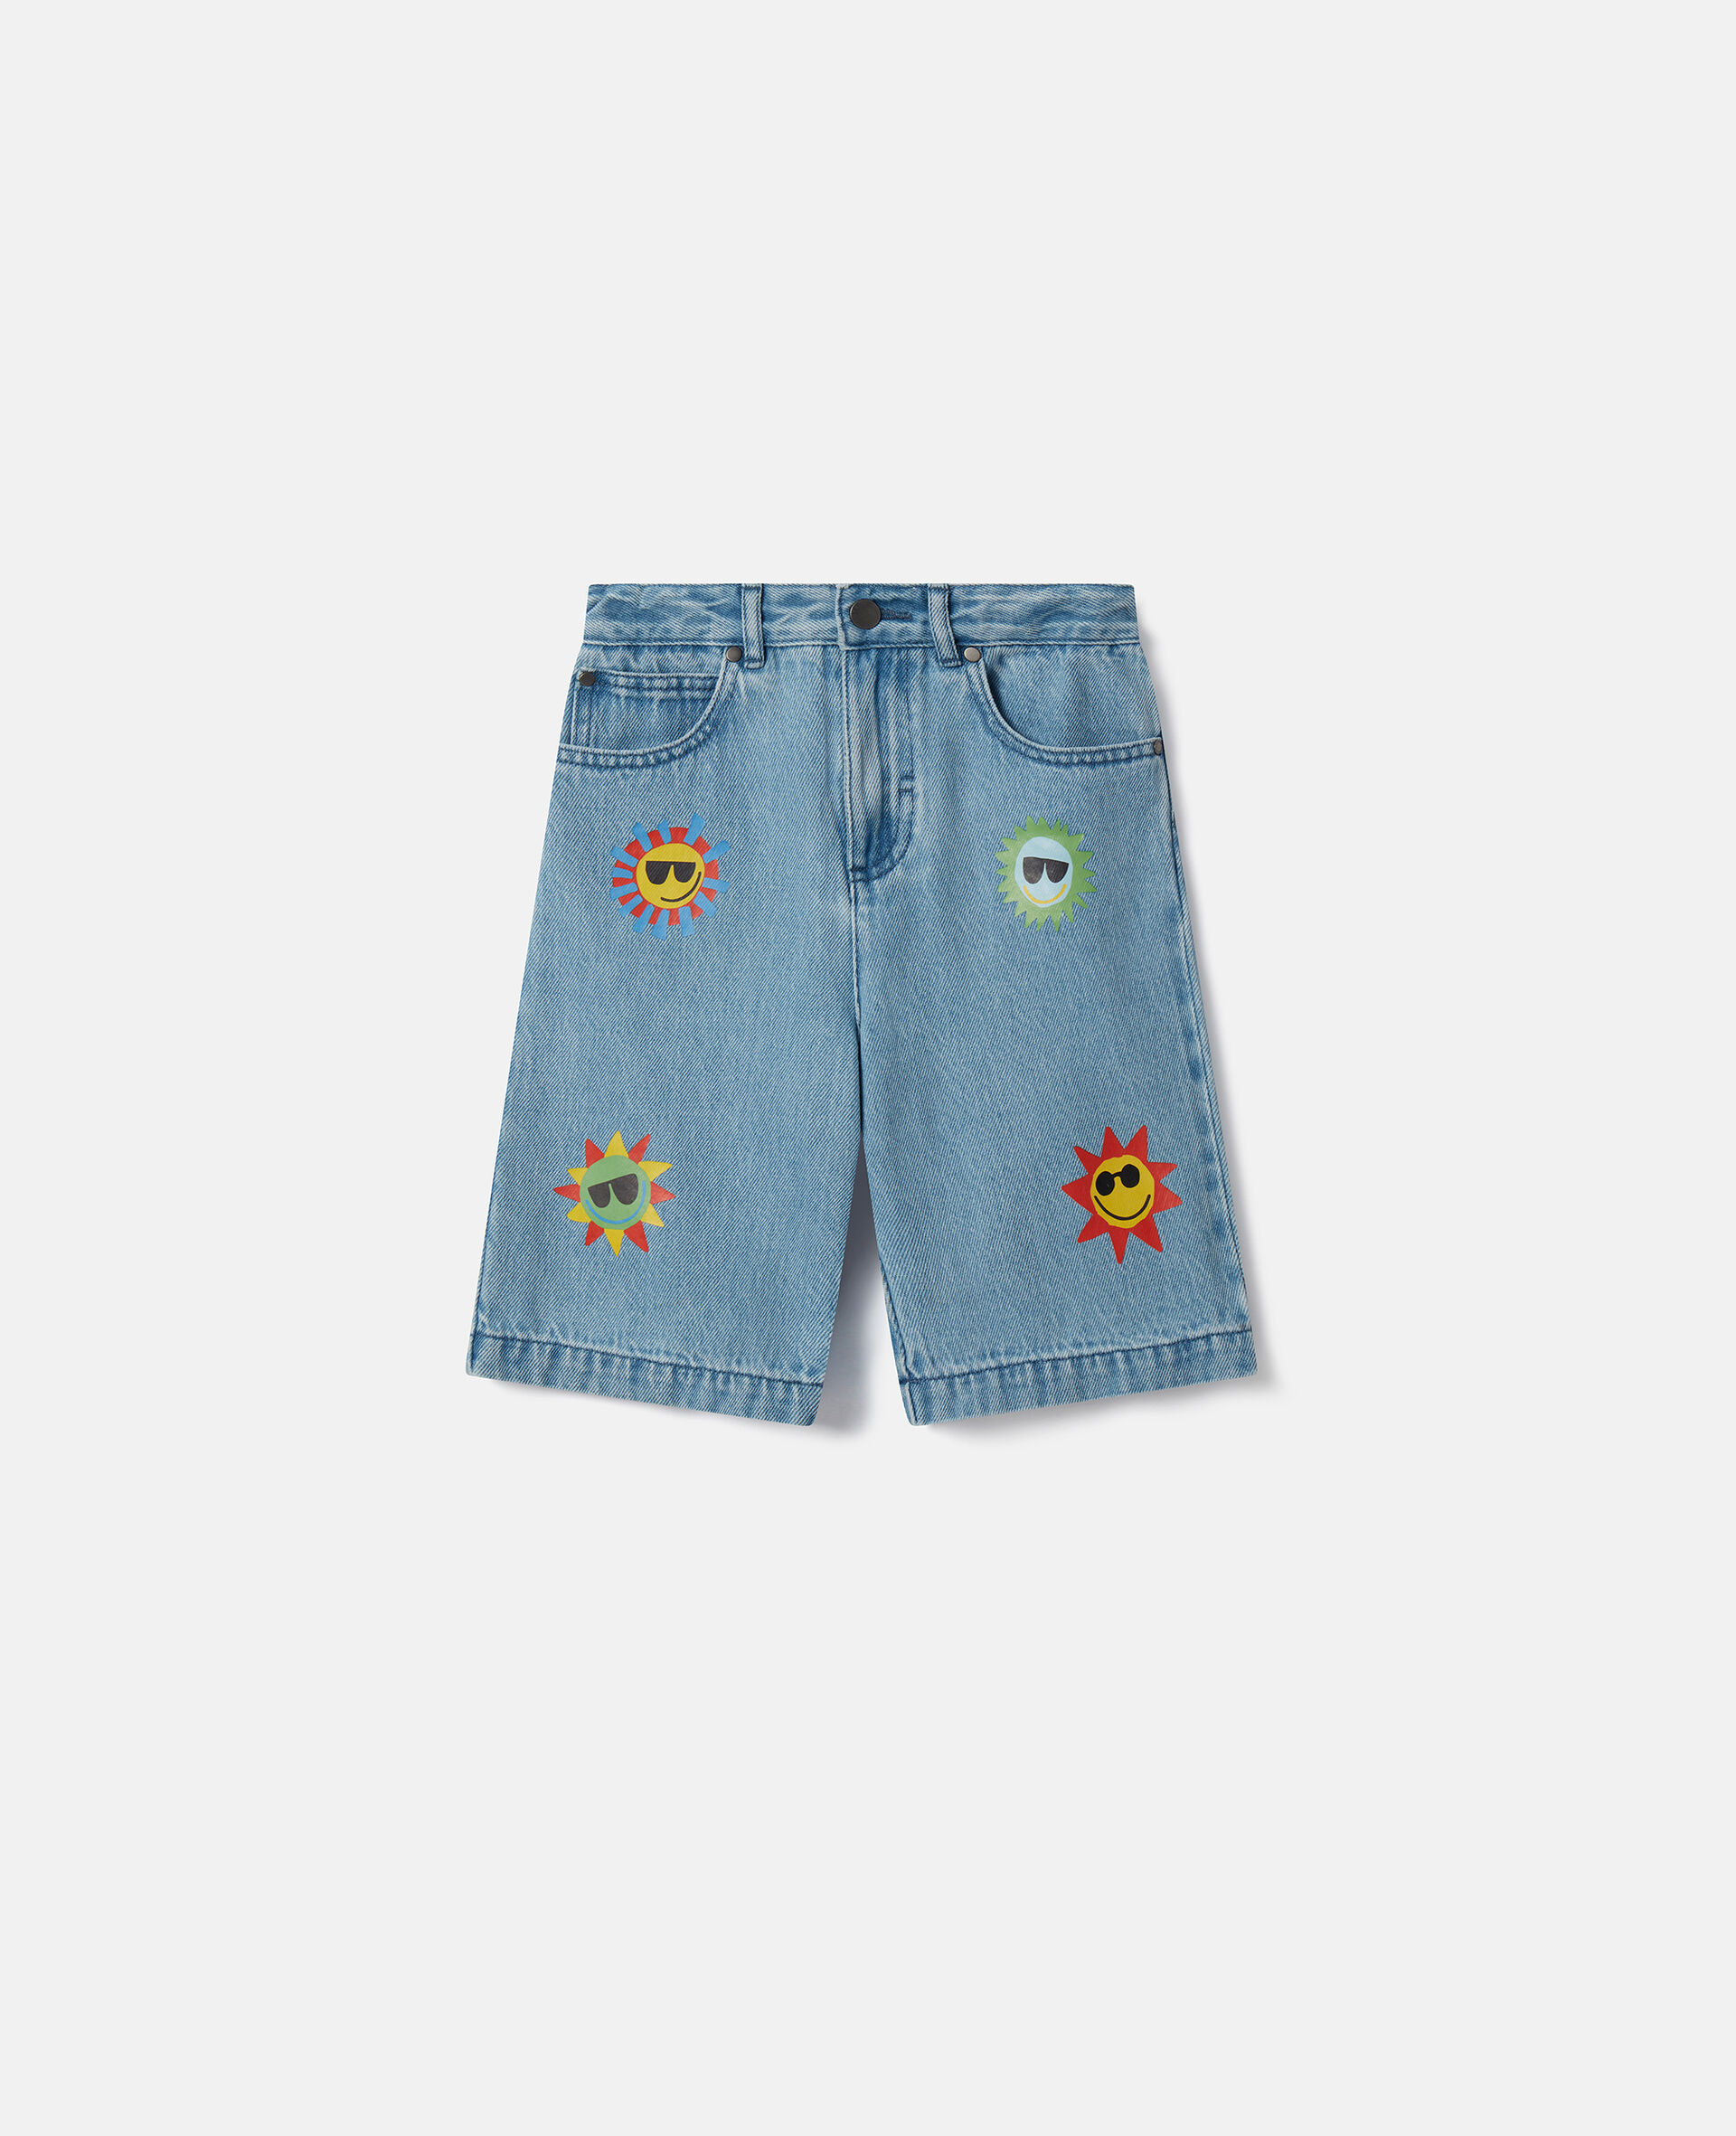 Sunshine Print Denim Shorts-蓝色-medium